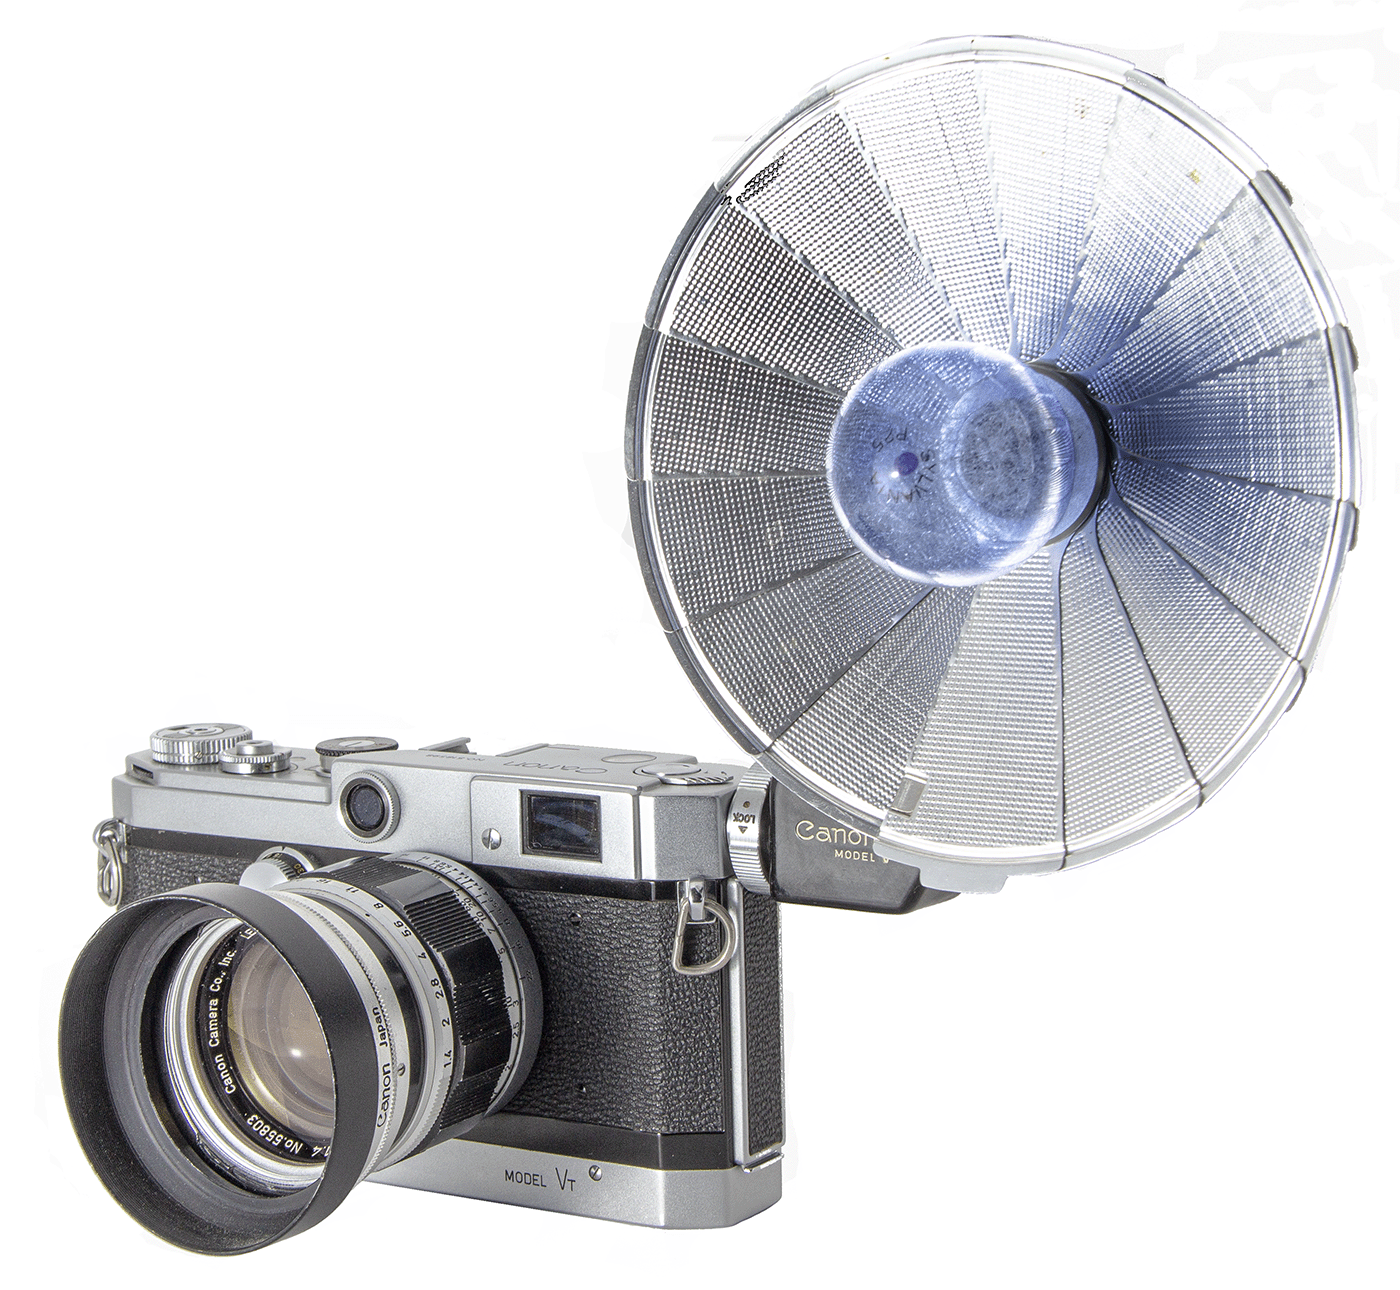 Canon Flash Unit Model V